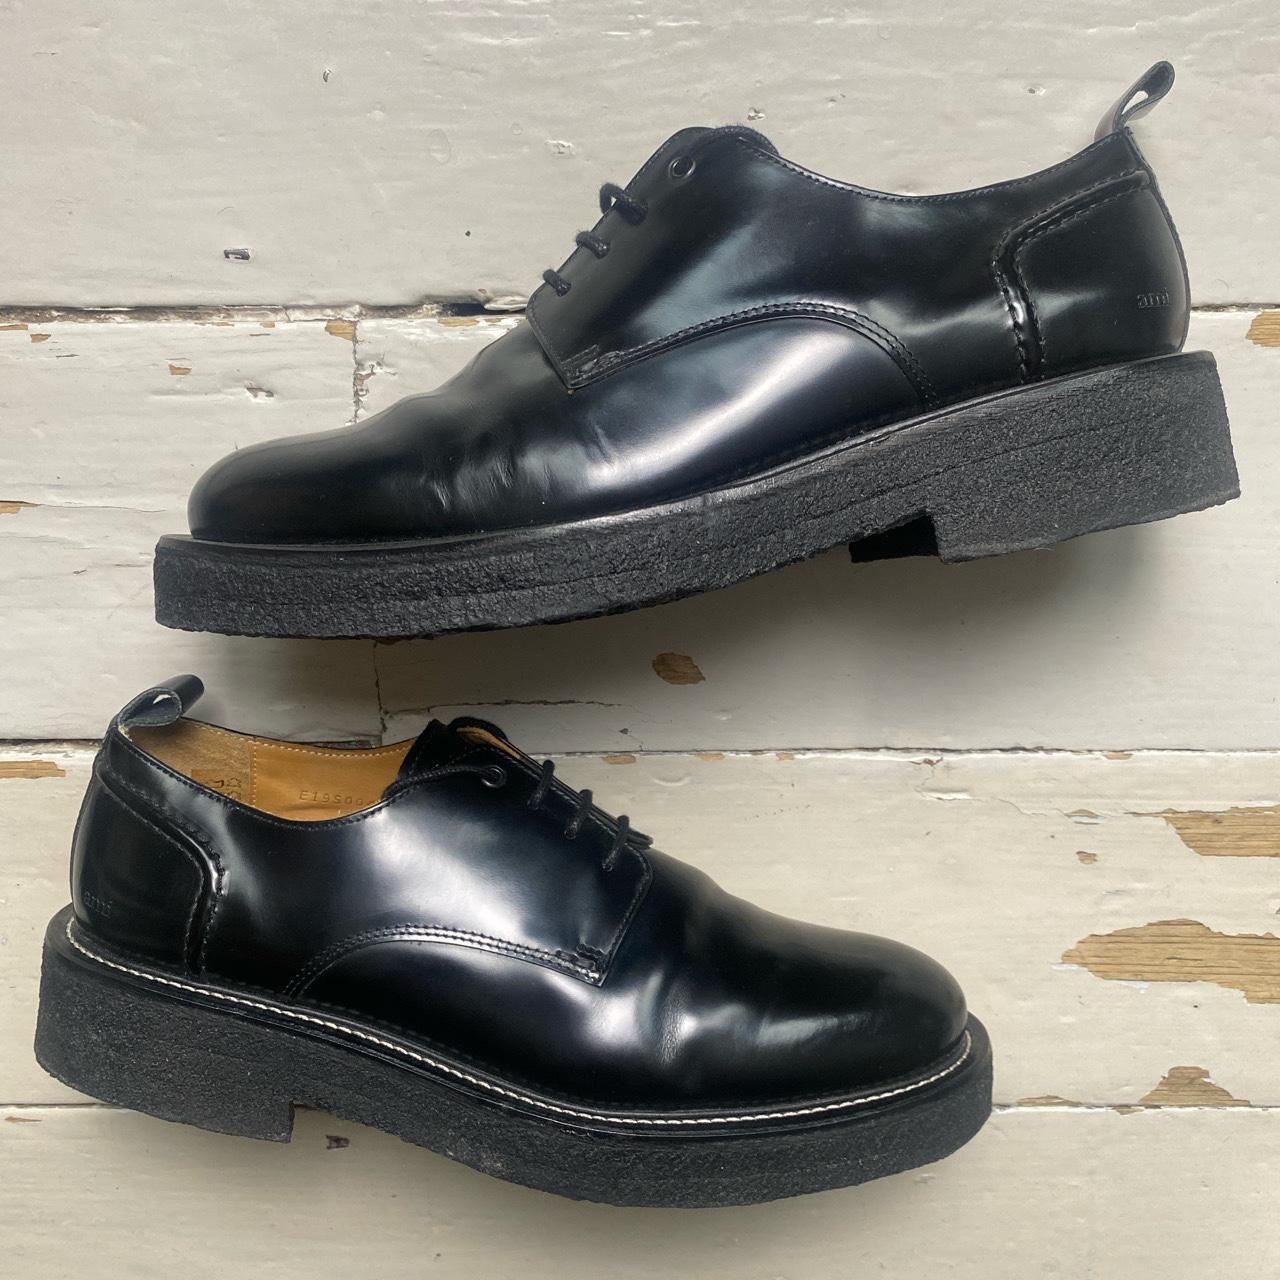 AMI Paris Leather Shiny Smart Black Brogue Shoes